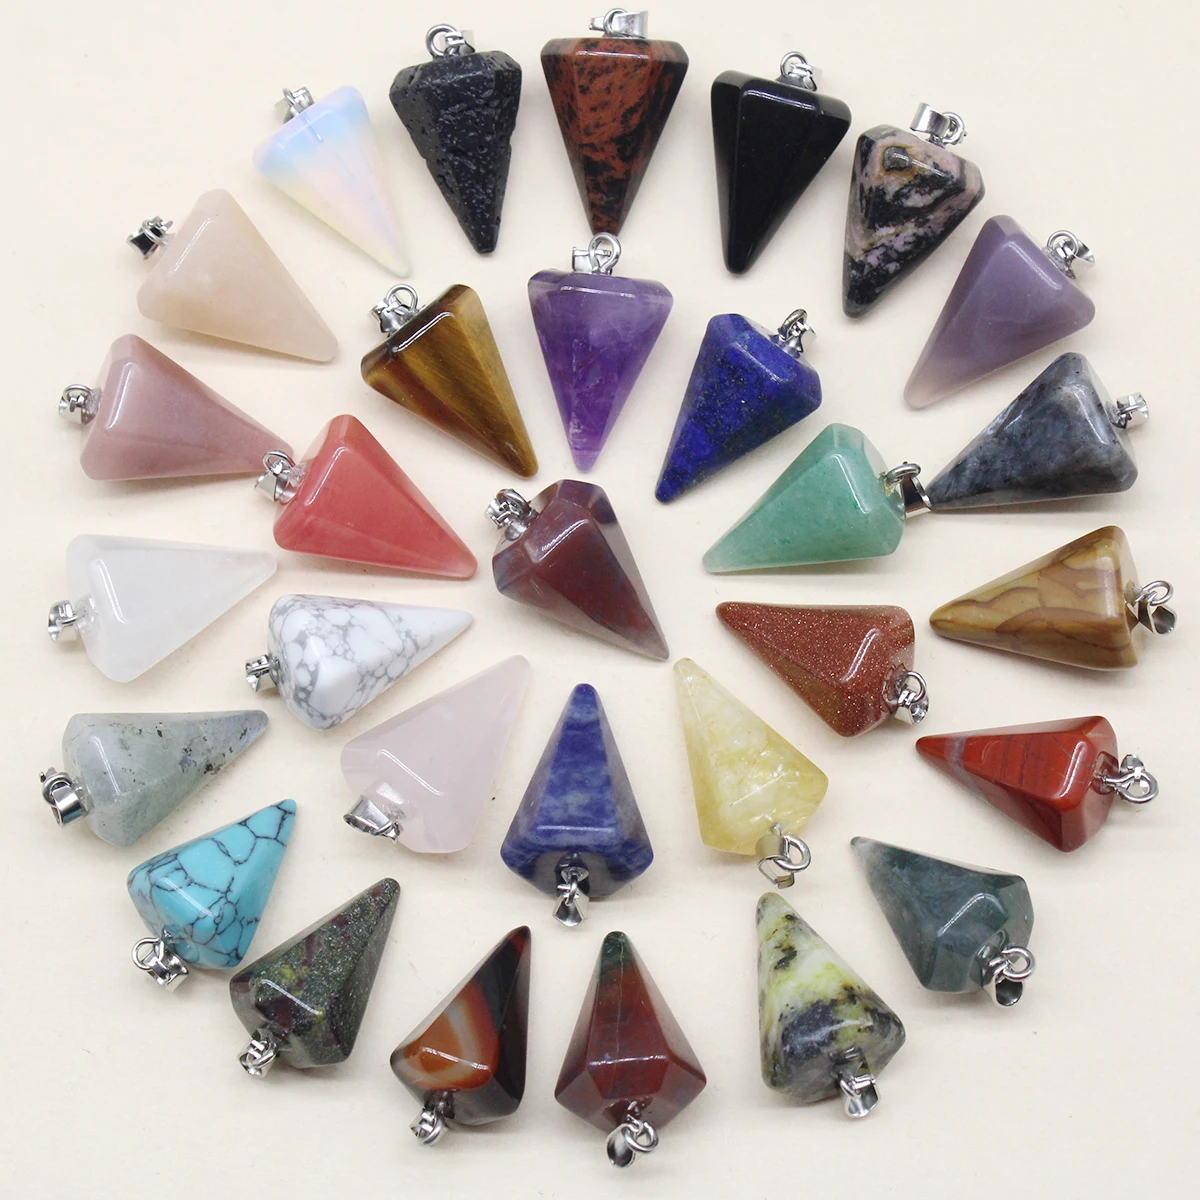 

24pcs Natural Stone Reiki Pendulum Divination Pendant Amethyst Quartz Crystal Agate Suitable for DIY Necklace Jewelry Pendant